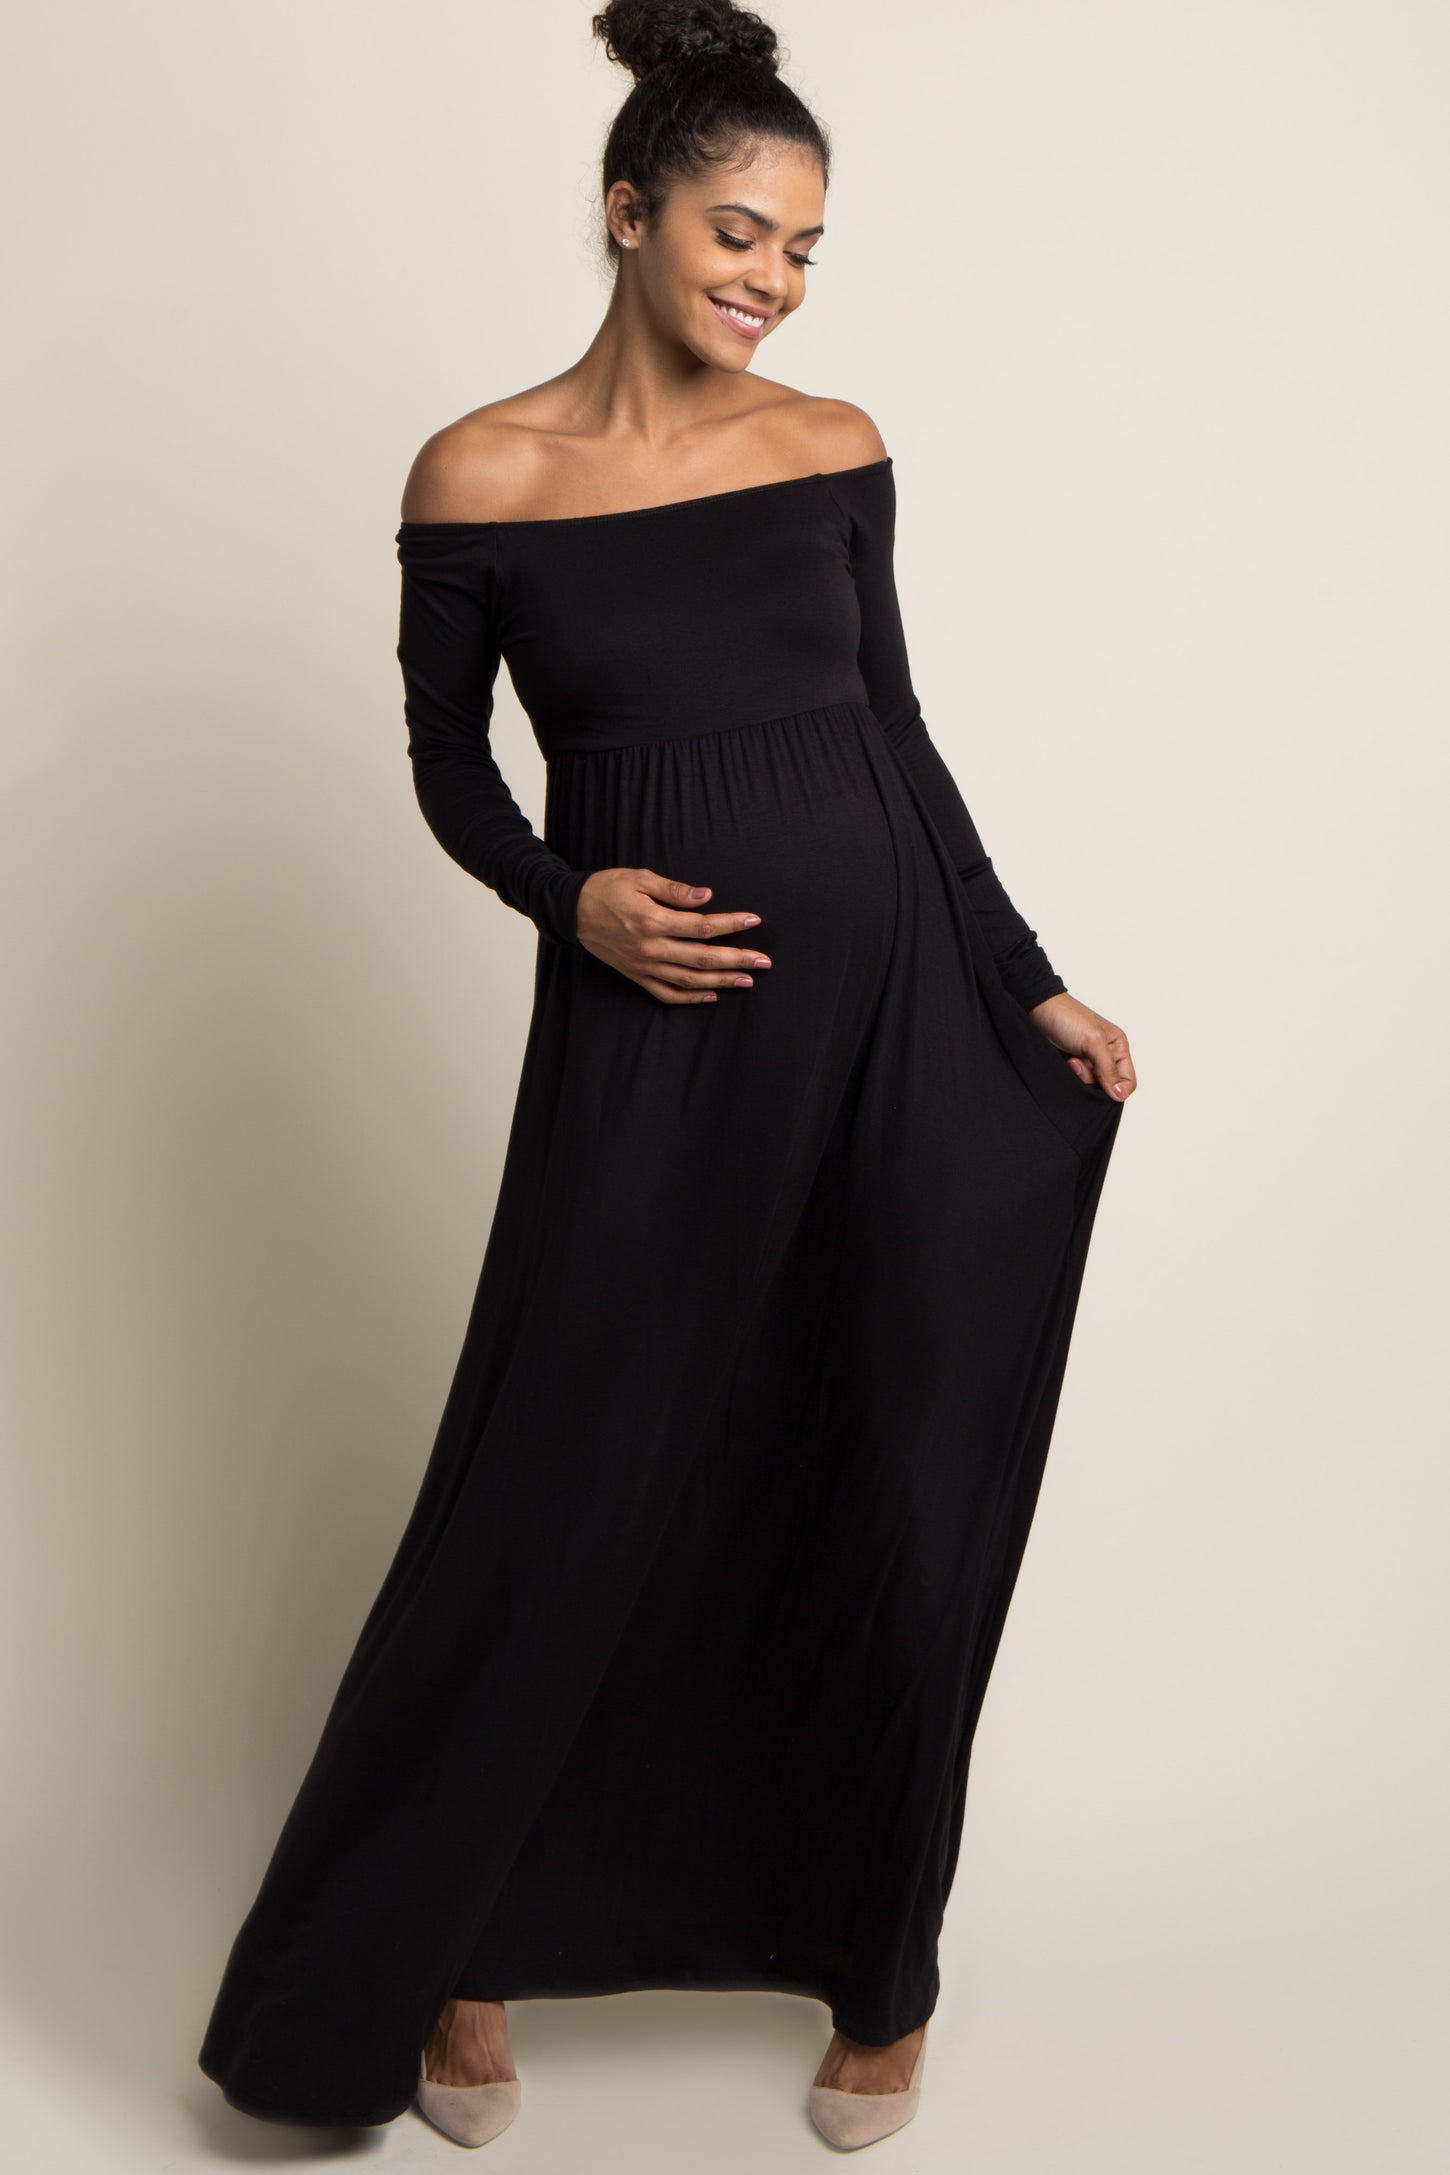 Black Solid Off Shoulder Maternity Maxi Dress